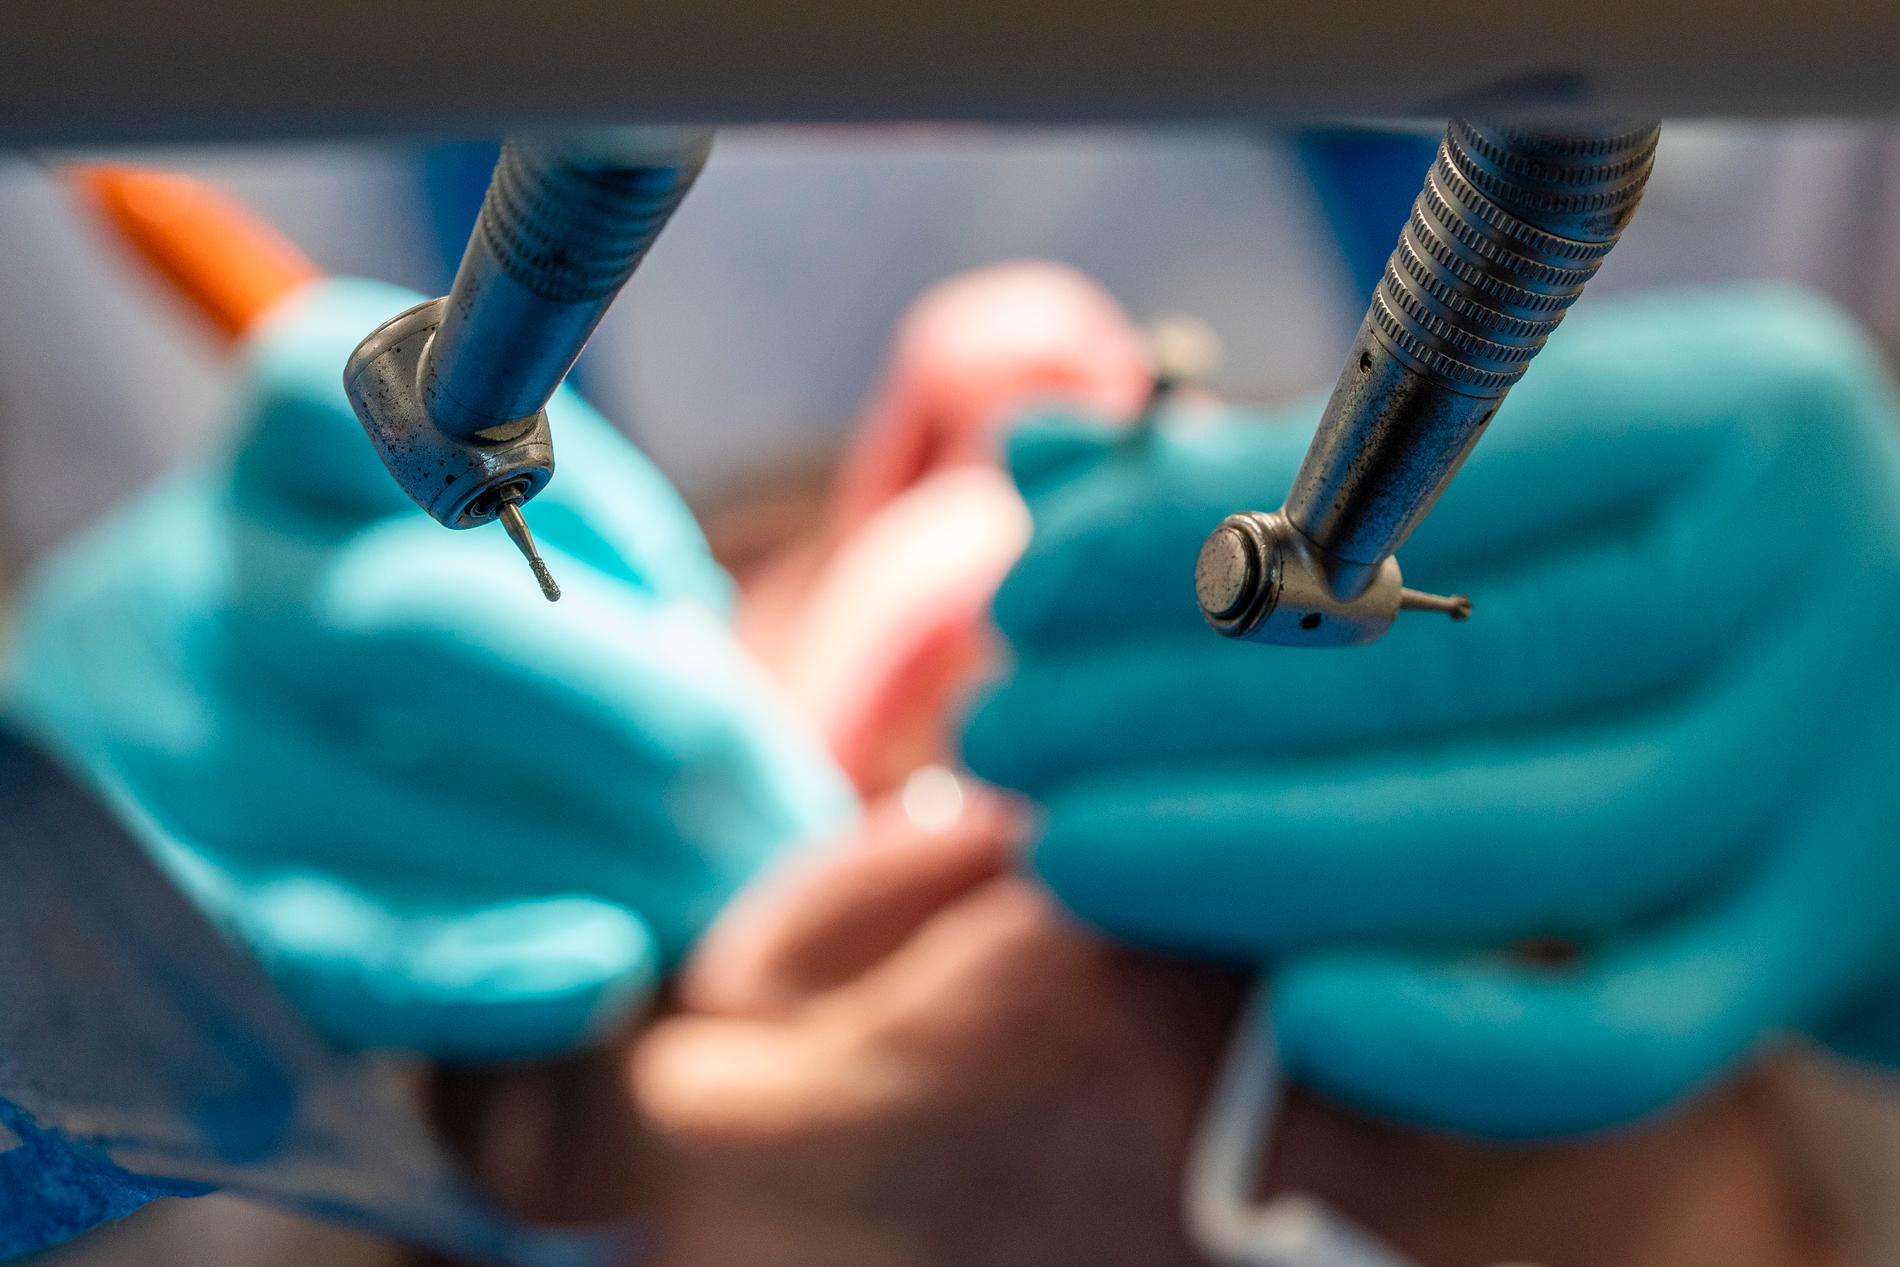 Fusket upptäcktes när Försäkringskassan såg att samtliga patienter hos ett av bolagen uppgavs ha fått implantat. 